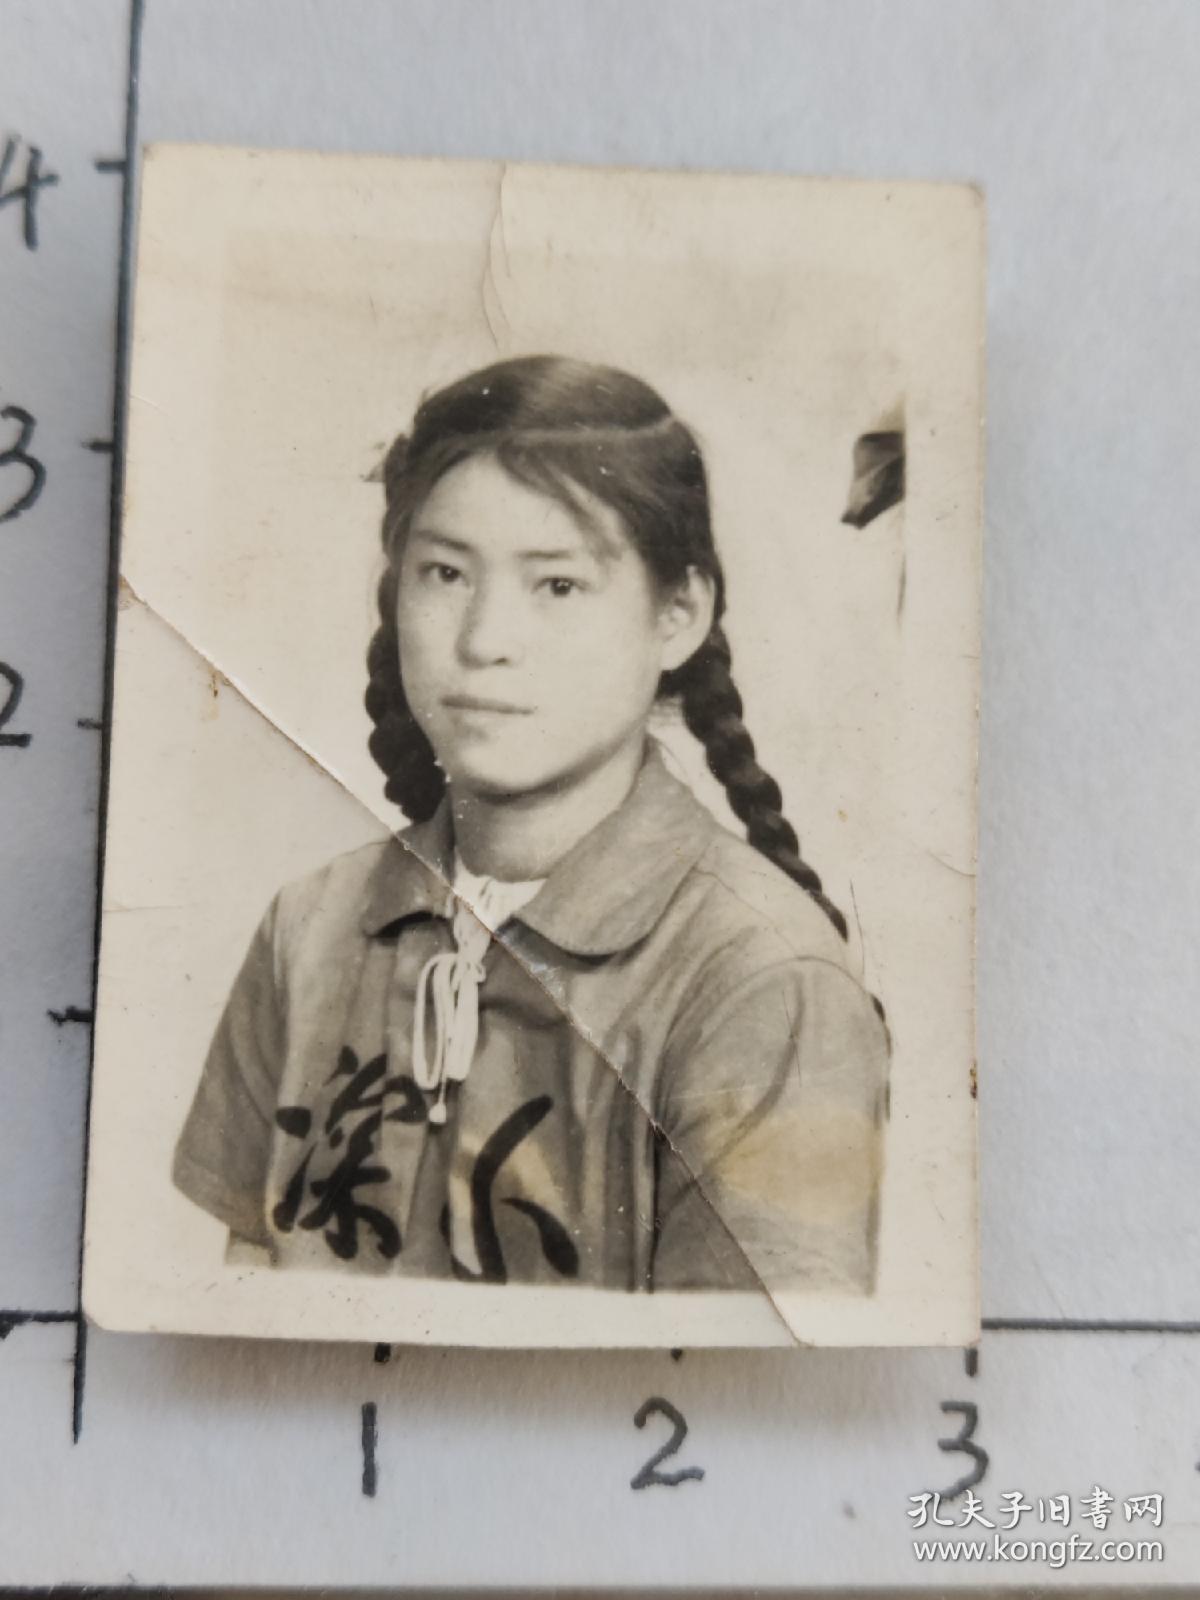 50-60年代粗辫子美女泛银照片(东川汤丹张金兰相册)100026